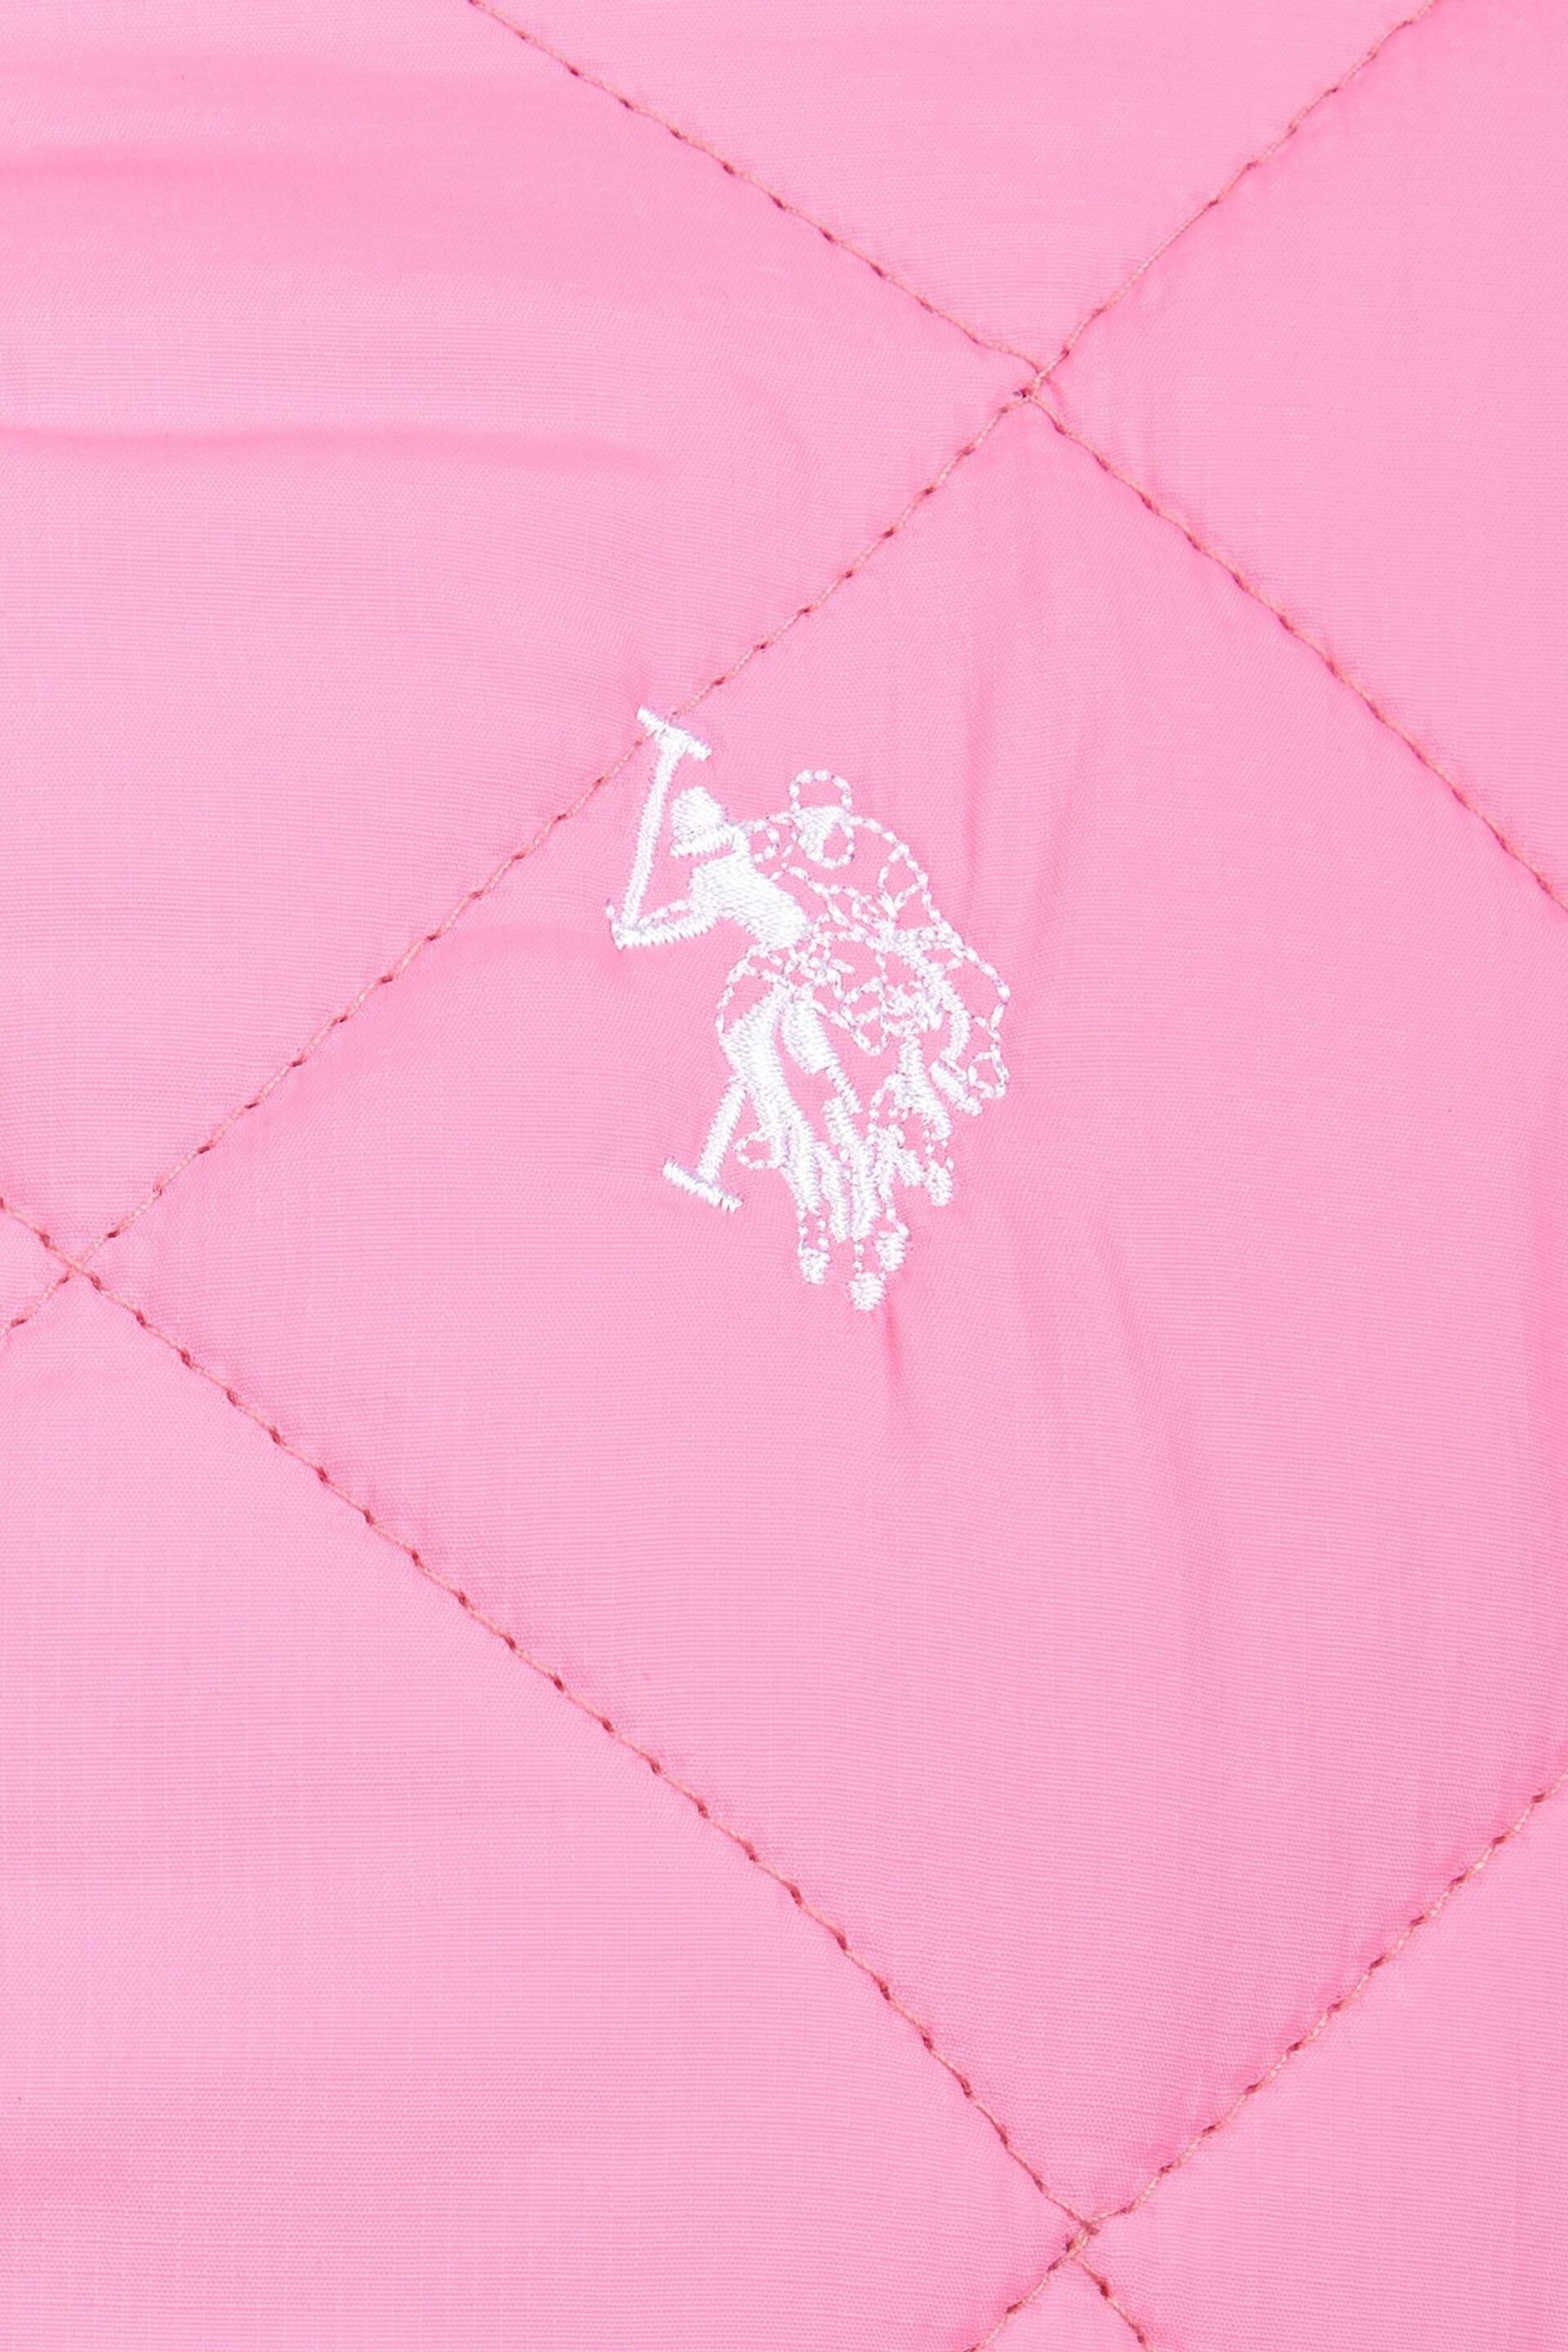 U.S. Polo Assn. Girls Pink Lightweight Puffer Jacket - Image 5 of 5